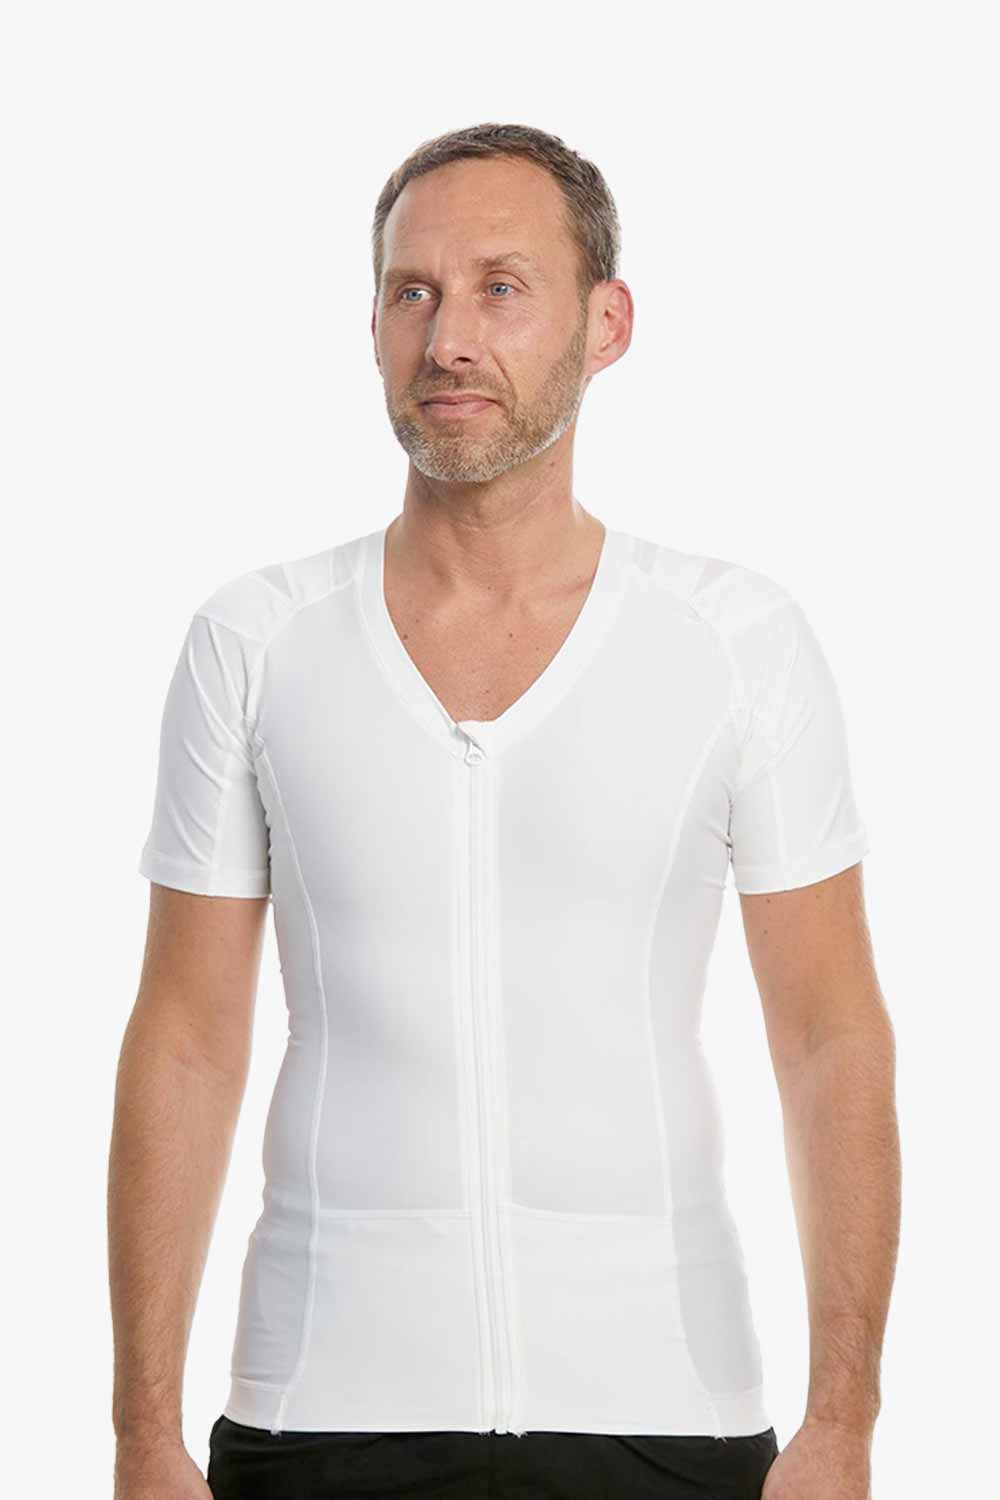 Men's Posture Shirt™ Zipper - Vit